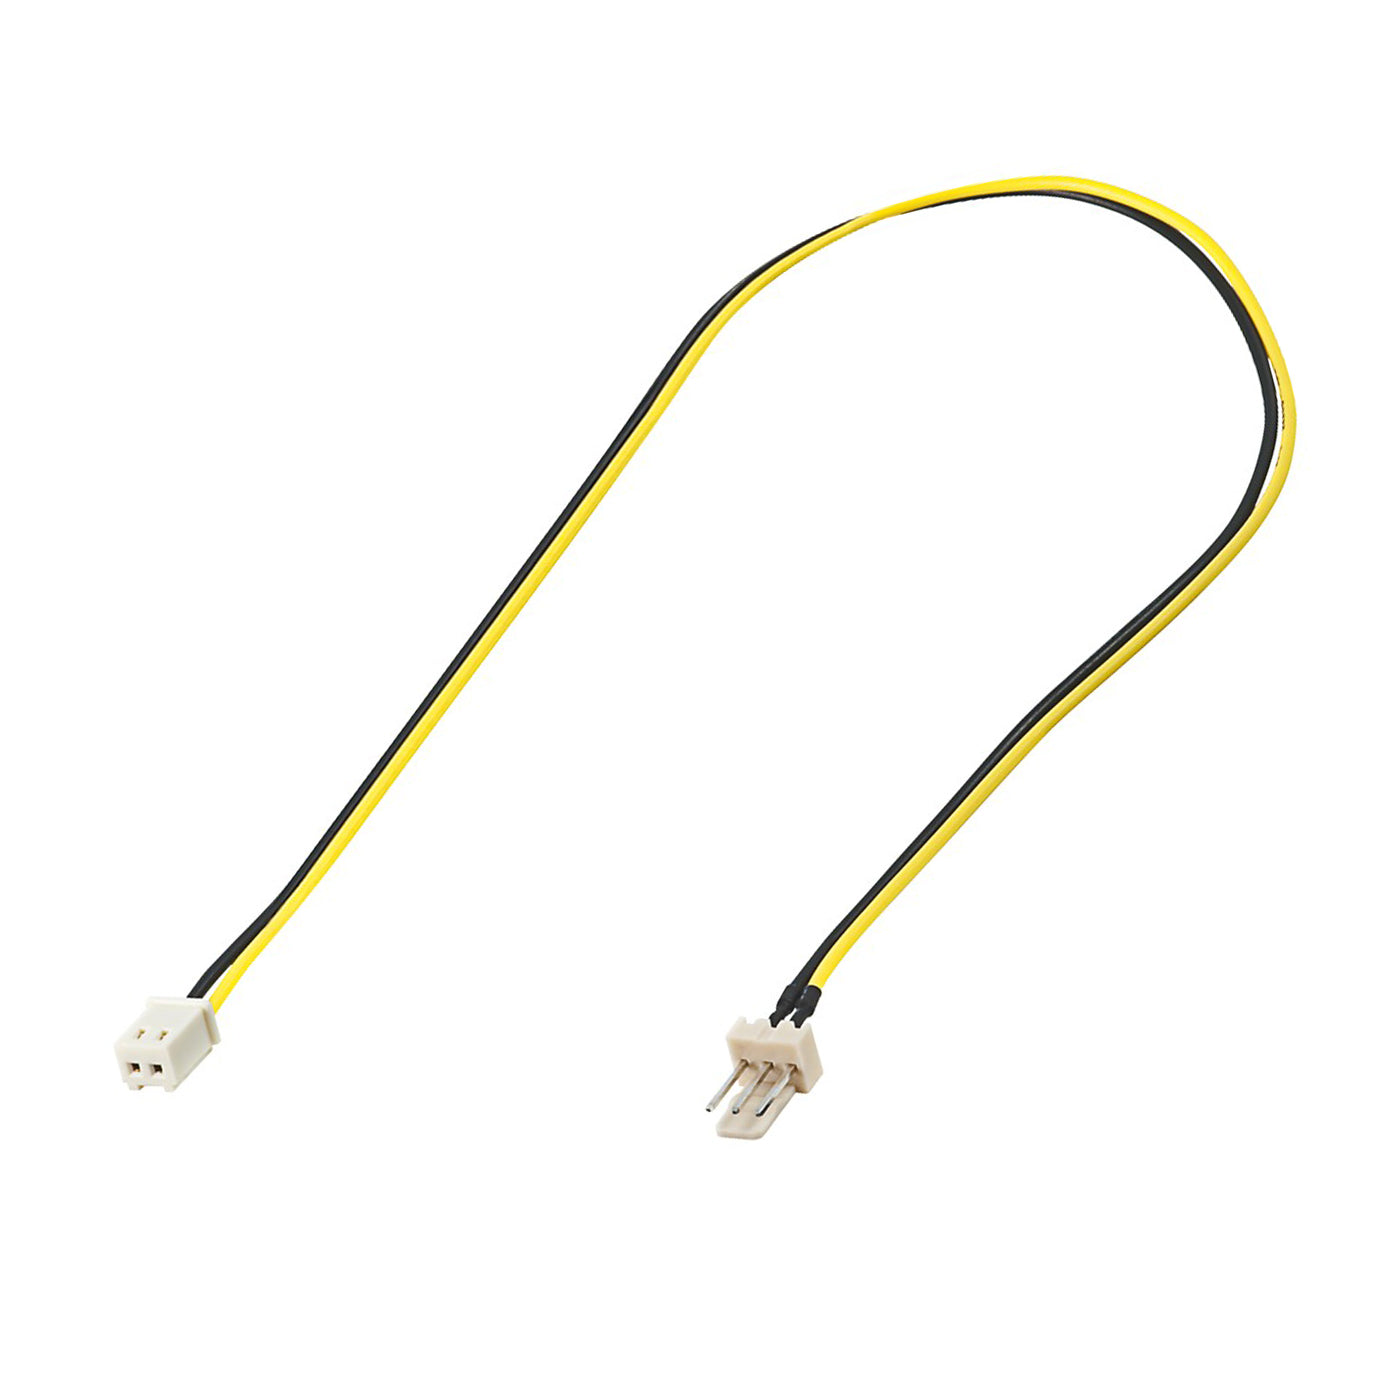 PC Lüfter Stromkabel 3 PIN Stecker zu 2 PIN Buchse 30cm Lüfterkabel Adapter